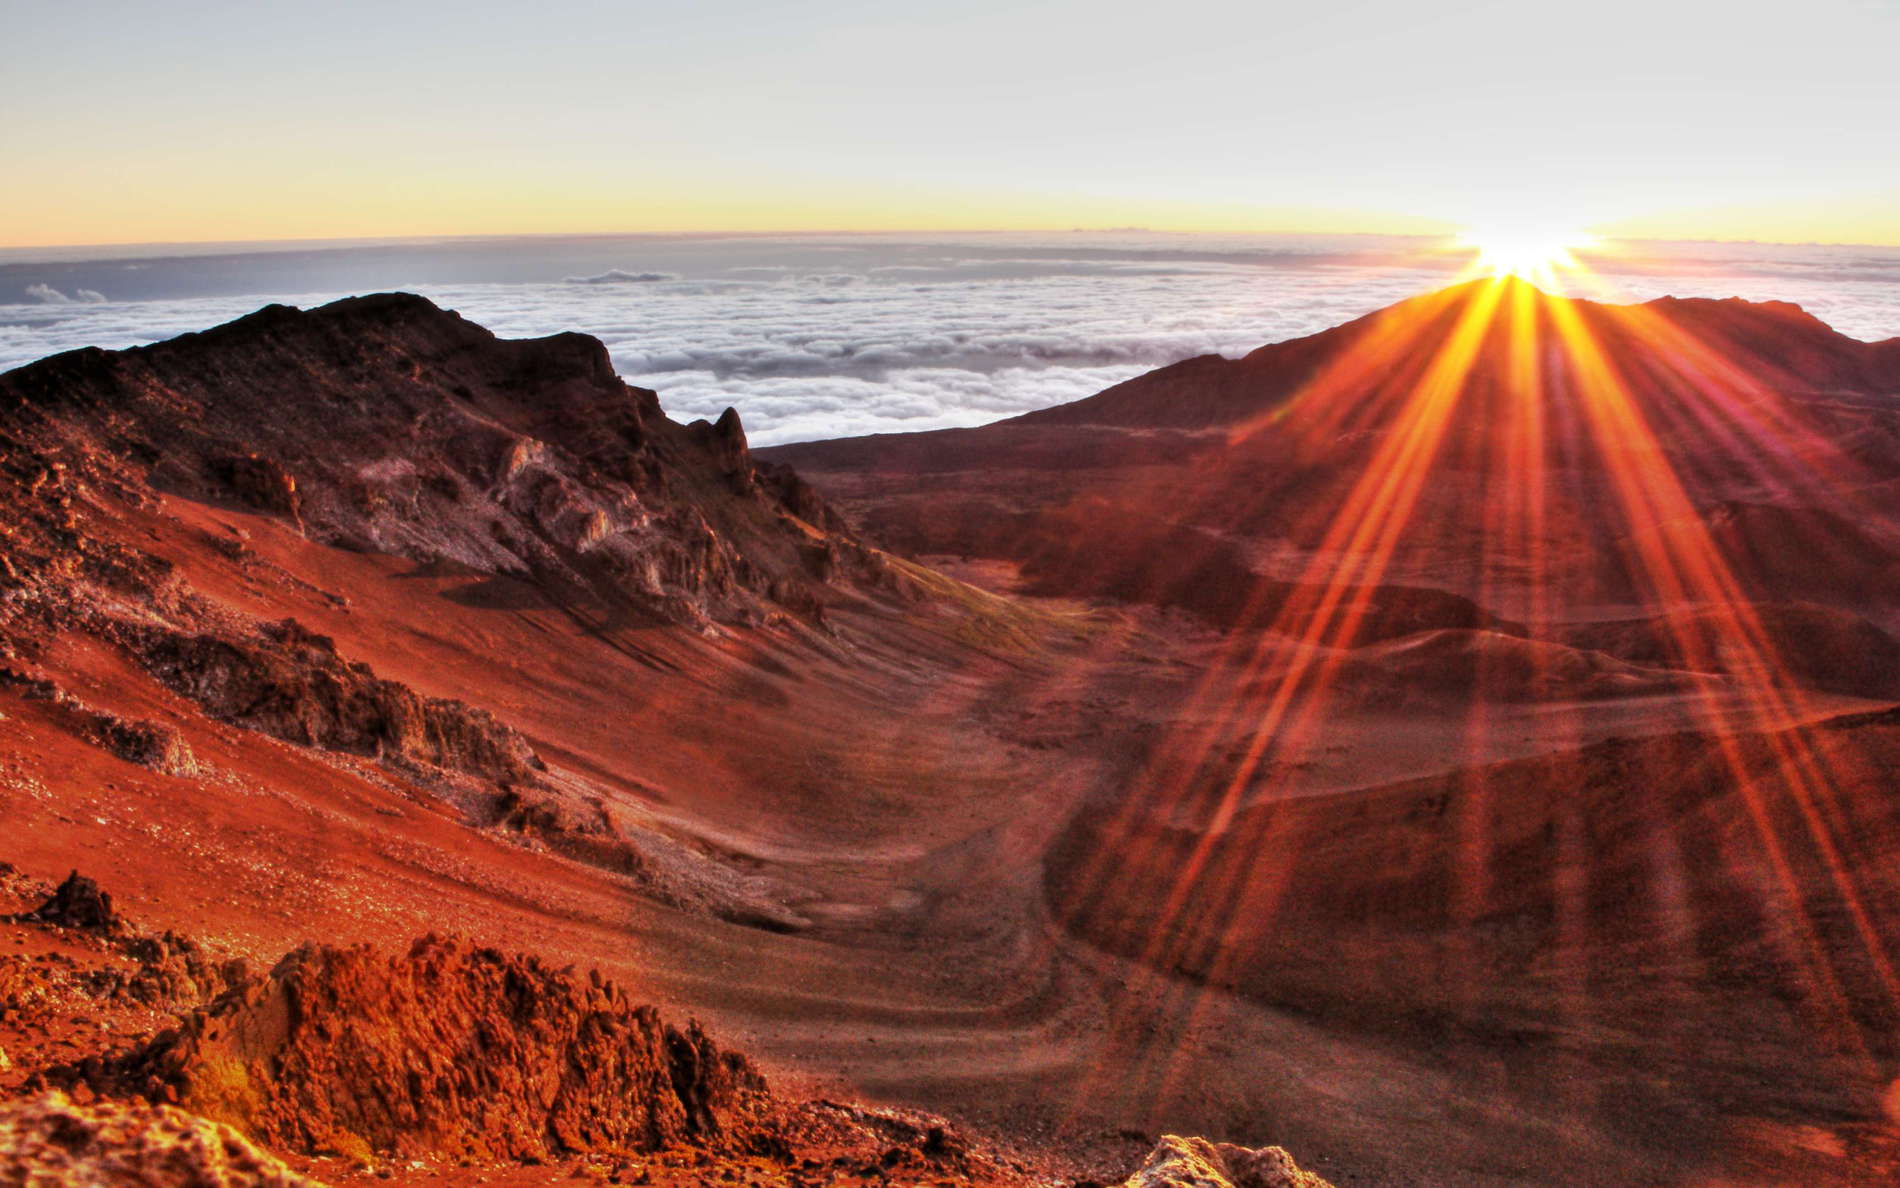 Haleakalā Crater at sunrise